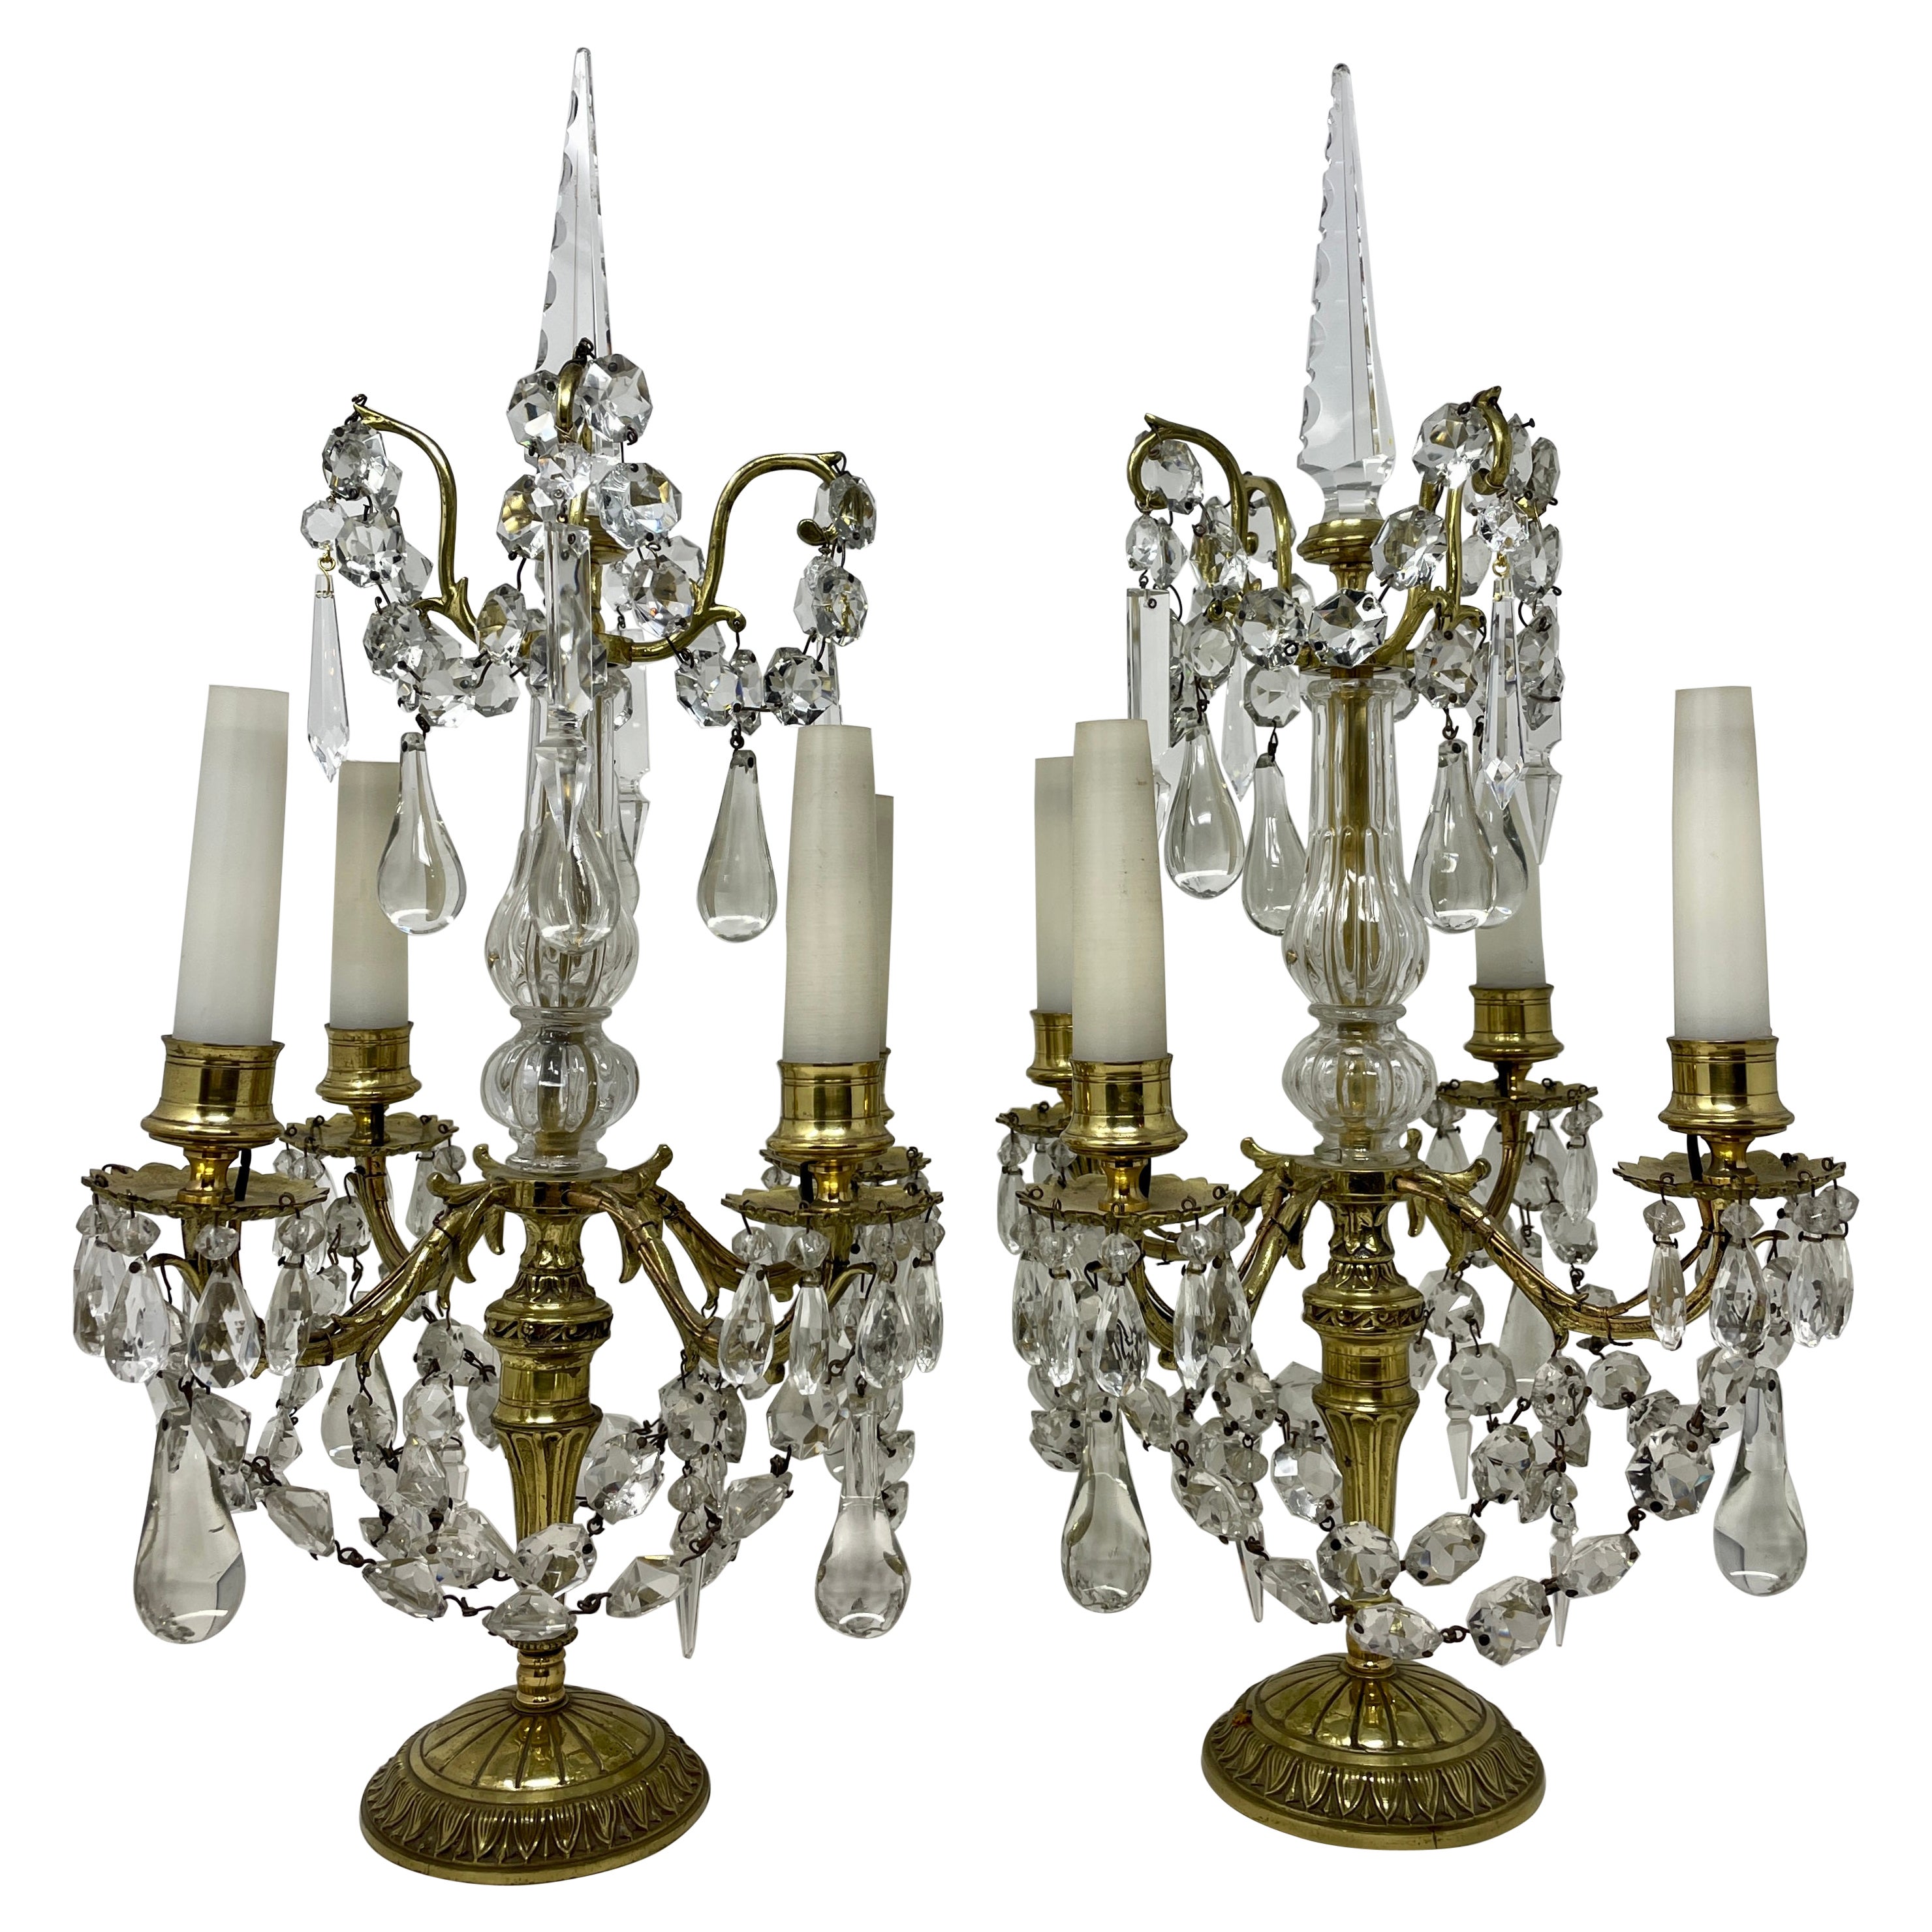 Paire de candélabres Girandoles françaises anciennes en bronze doré et cristal, vers 1890.